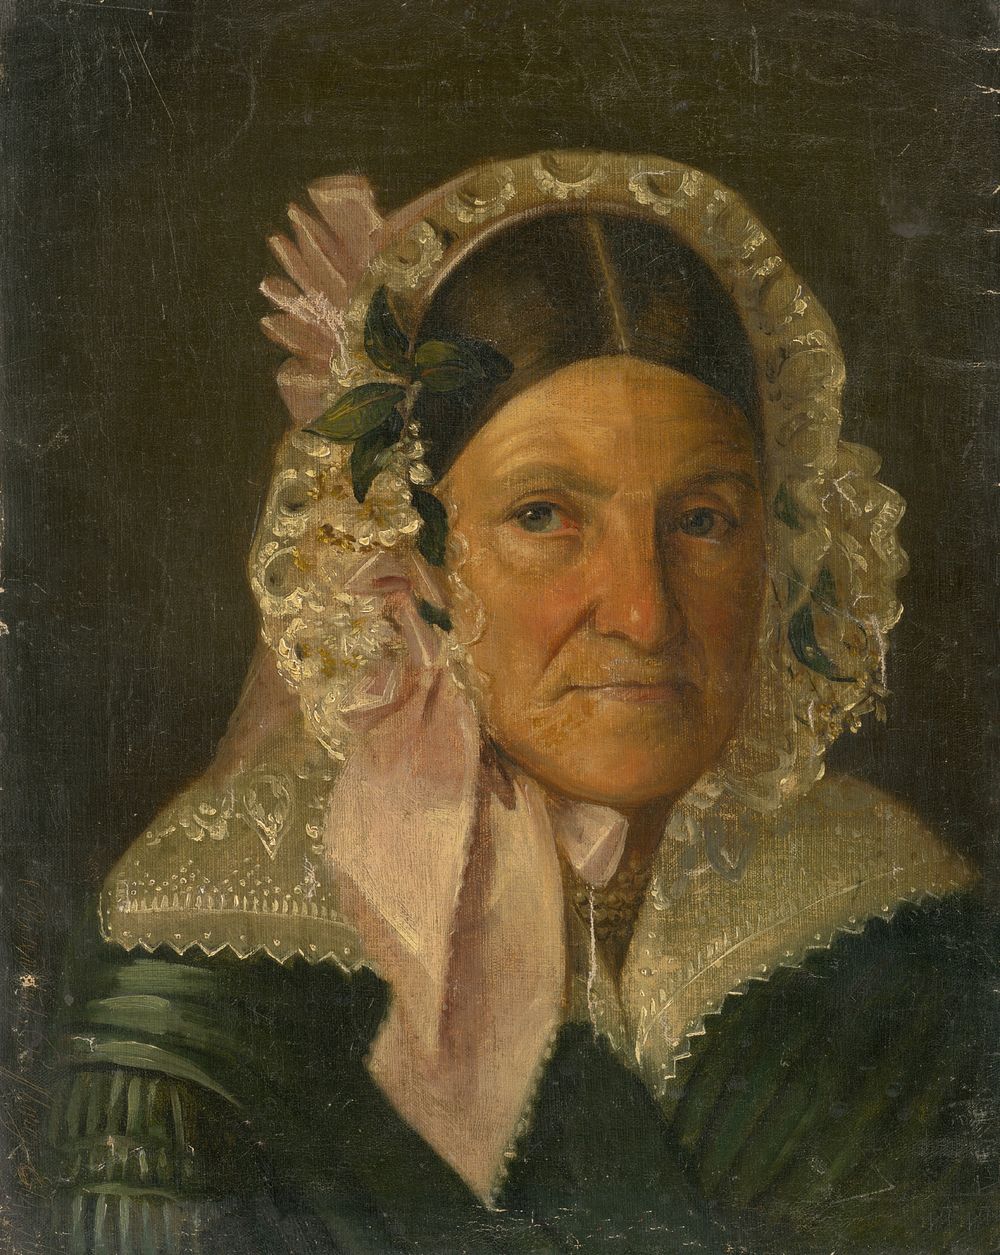 Portrait of an older woman in a bonnet